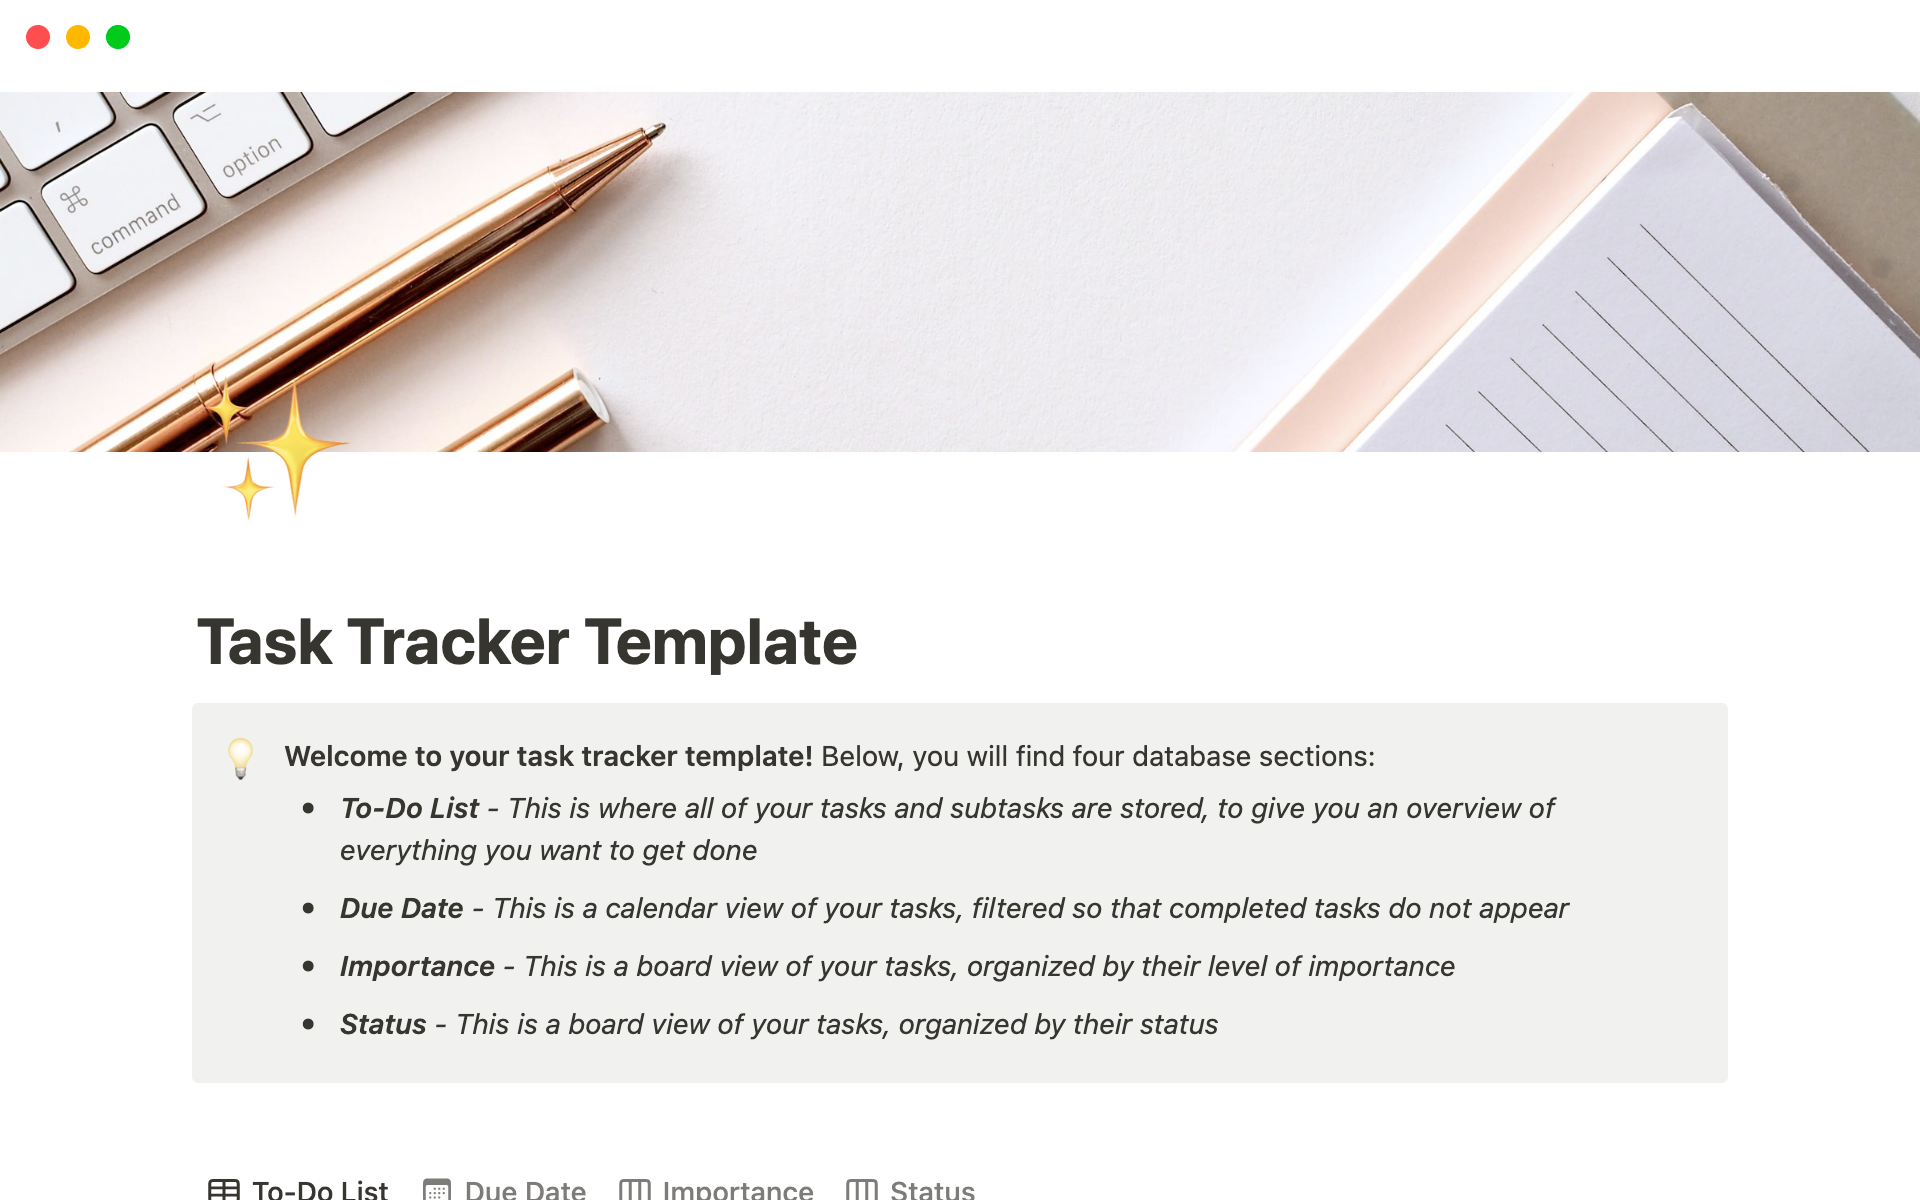 Uma prévia do modelo para Task Tracker